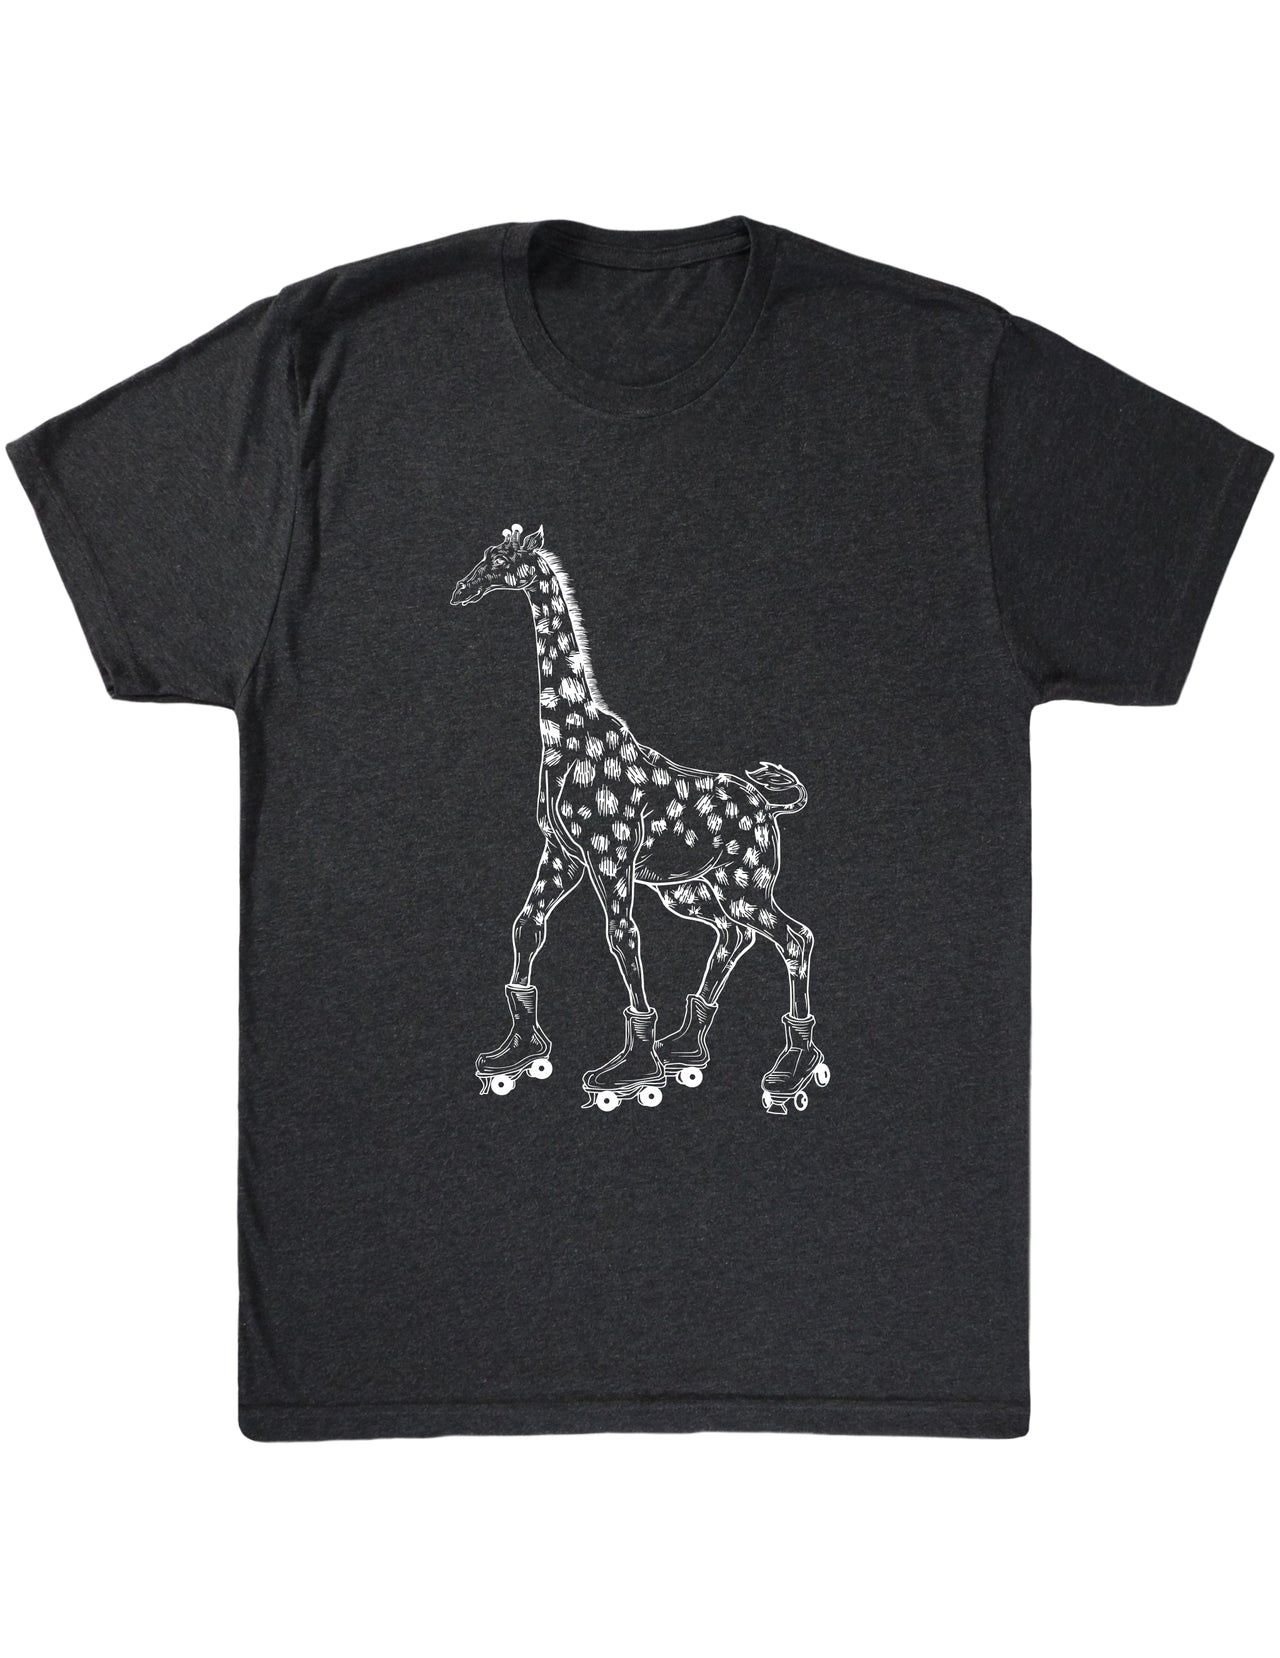 seembo-giraffe-roller-skater-skating-art-men-vintage-black-t-shirt